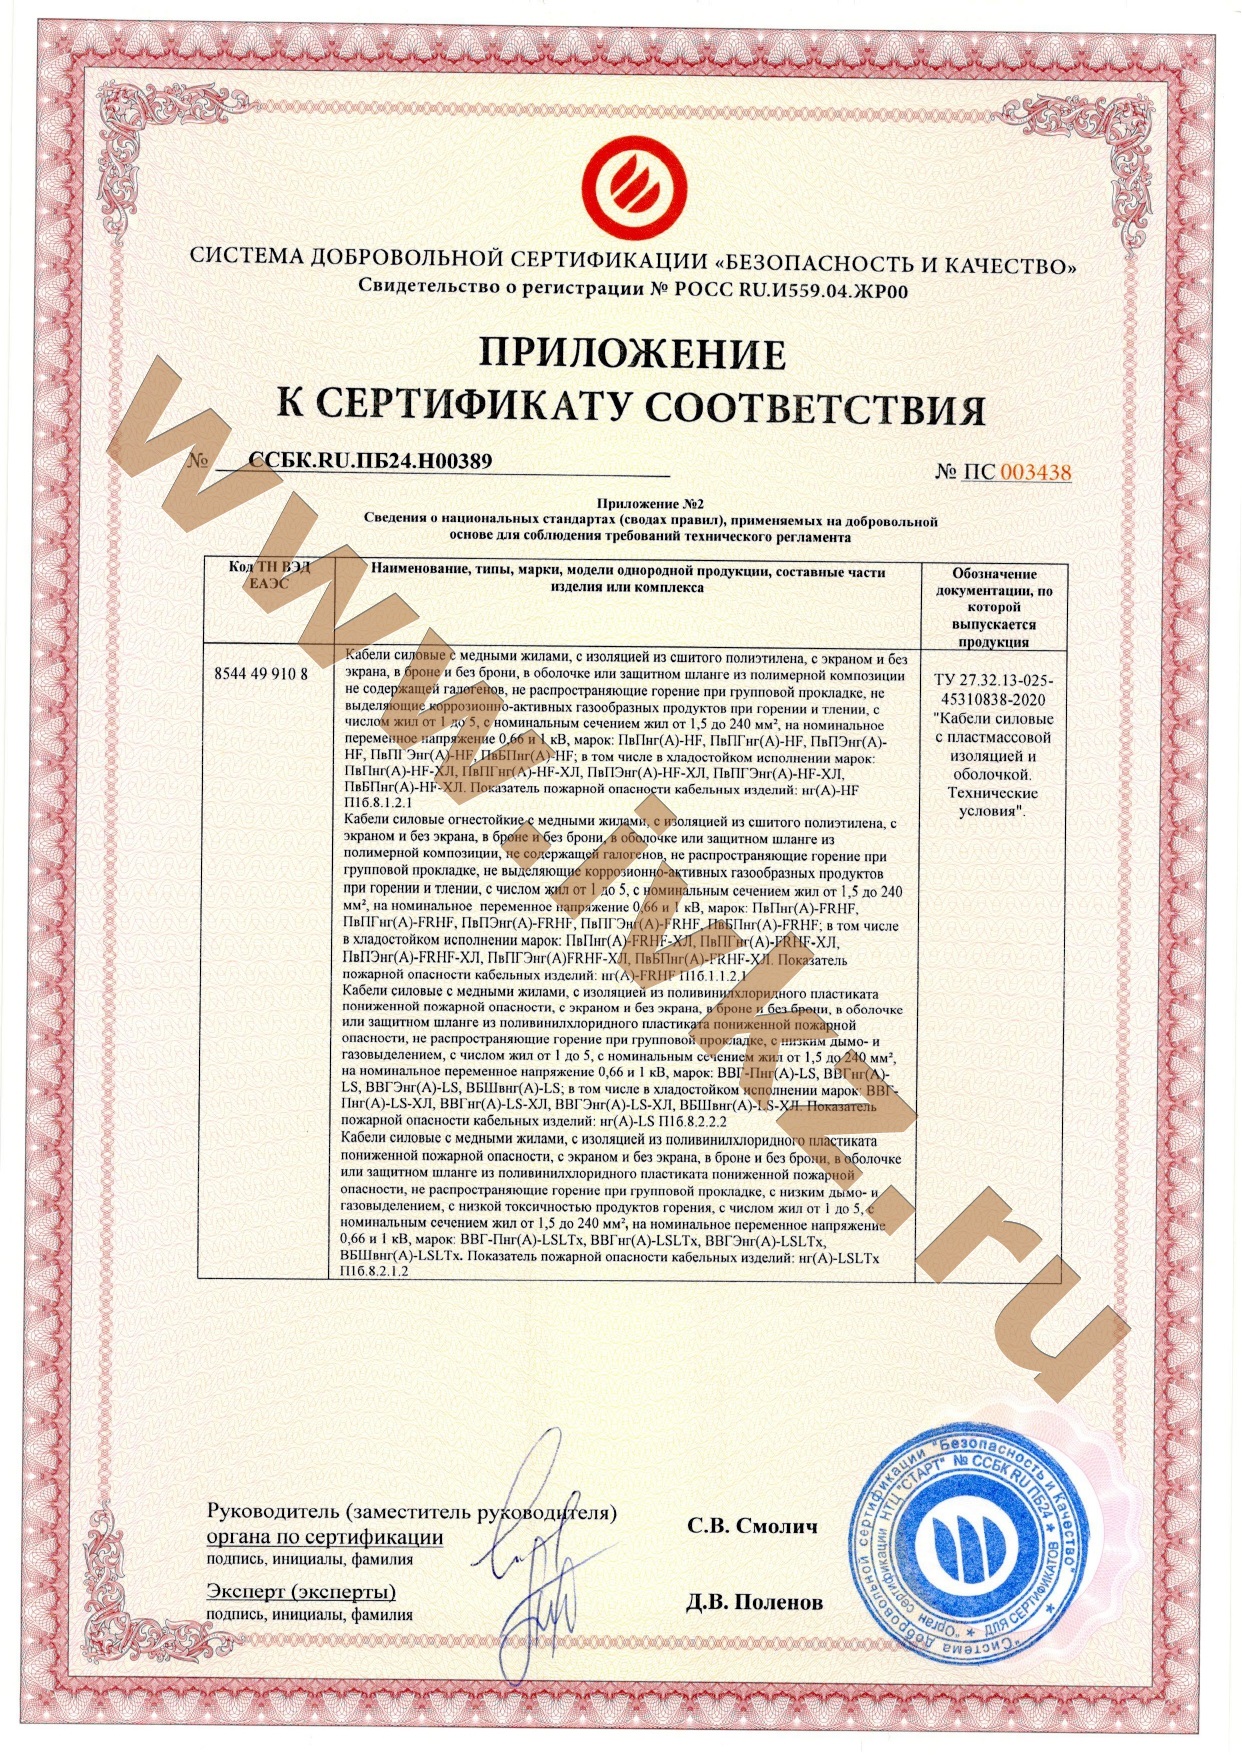 Не распространяющий горение при групповой прокладке. Ивановский кабельный завод сертификат соответствия.